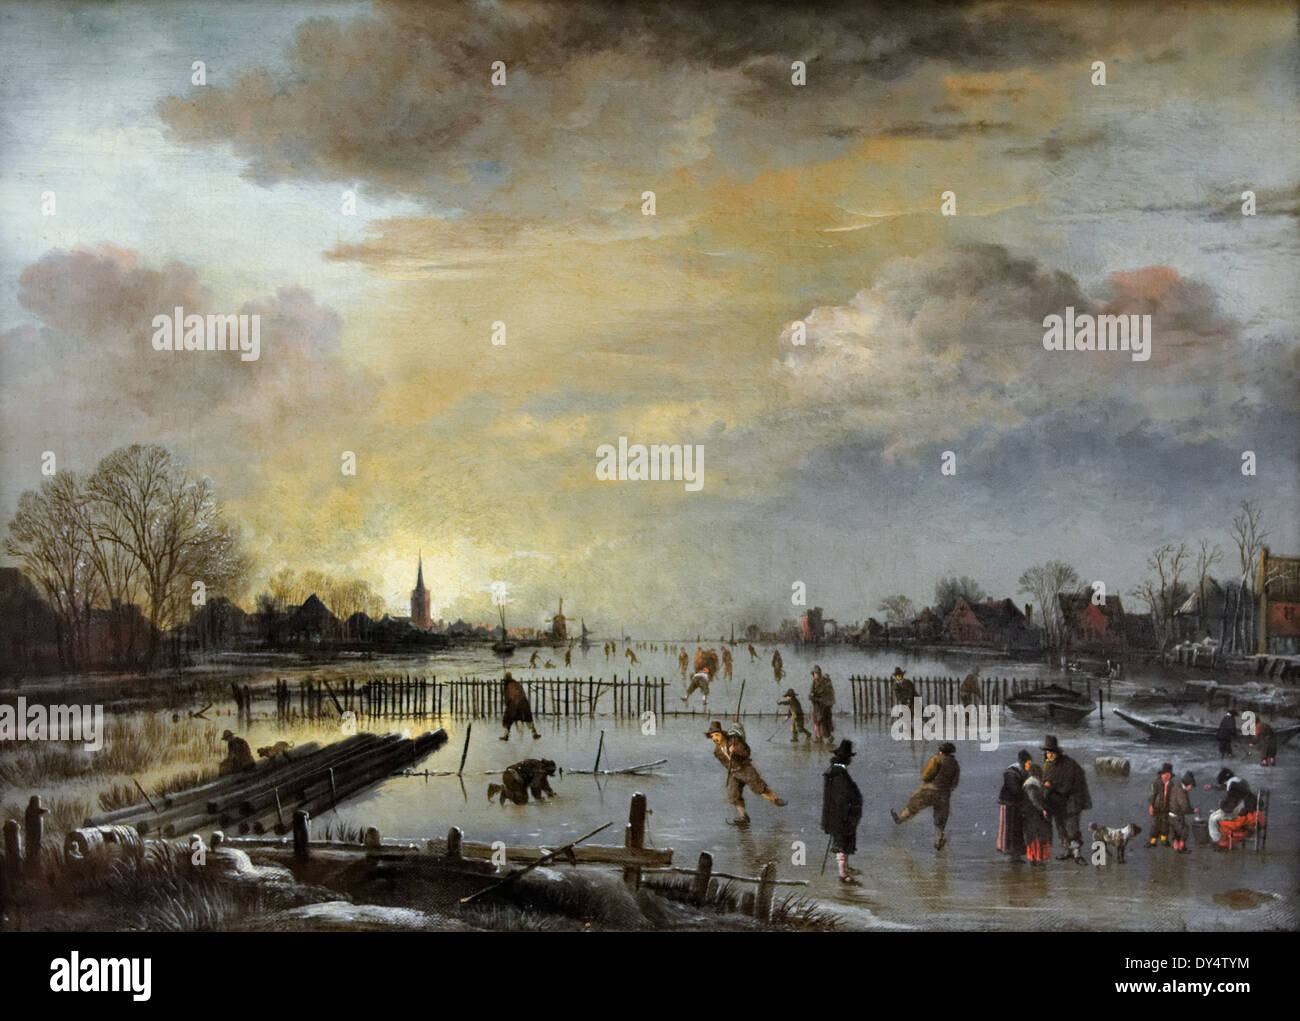 Aert van der Neer - paysage d'hiver avec des patineurs - 1660 - XVII ème siècle - École flamande - Gemäldegalerie - Berlin Banque D'Images